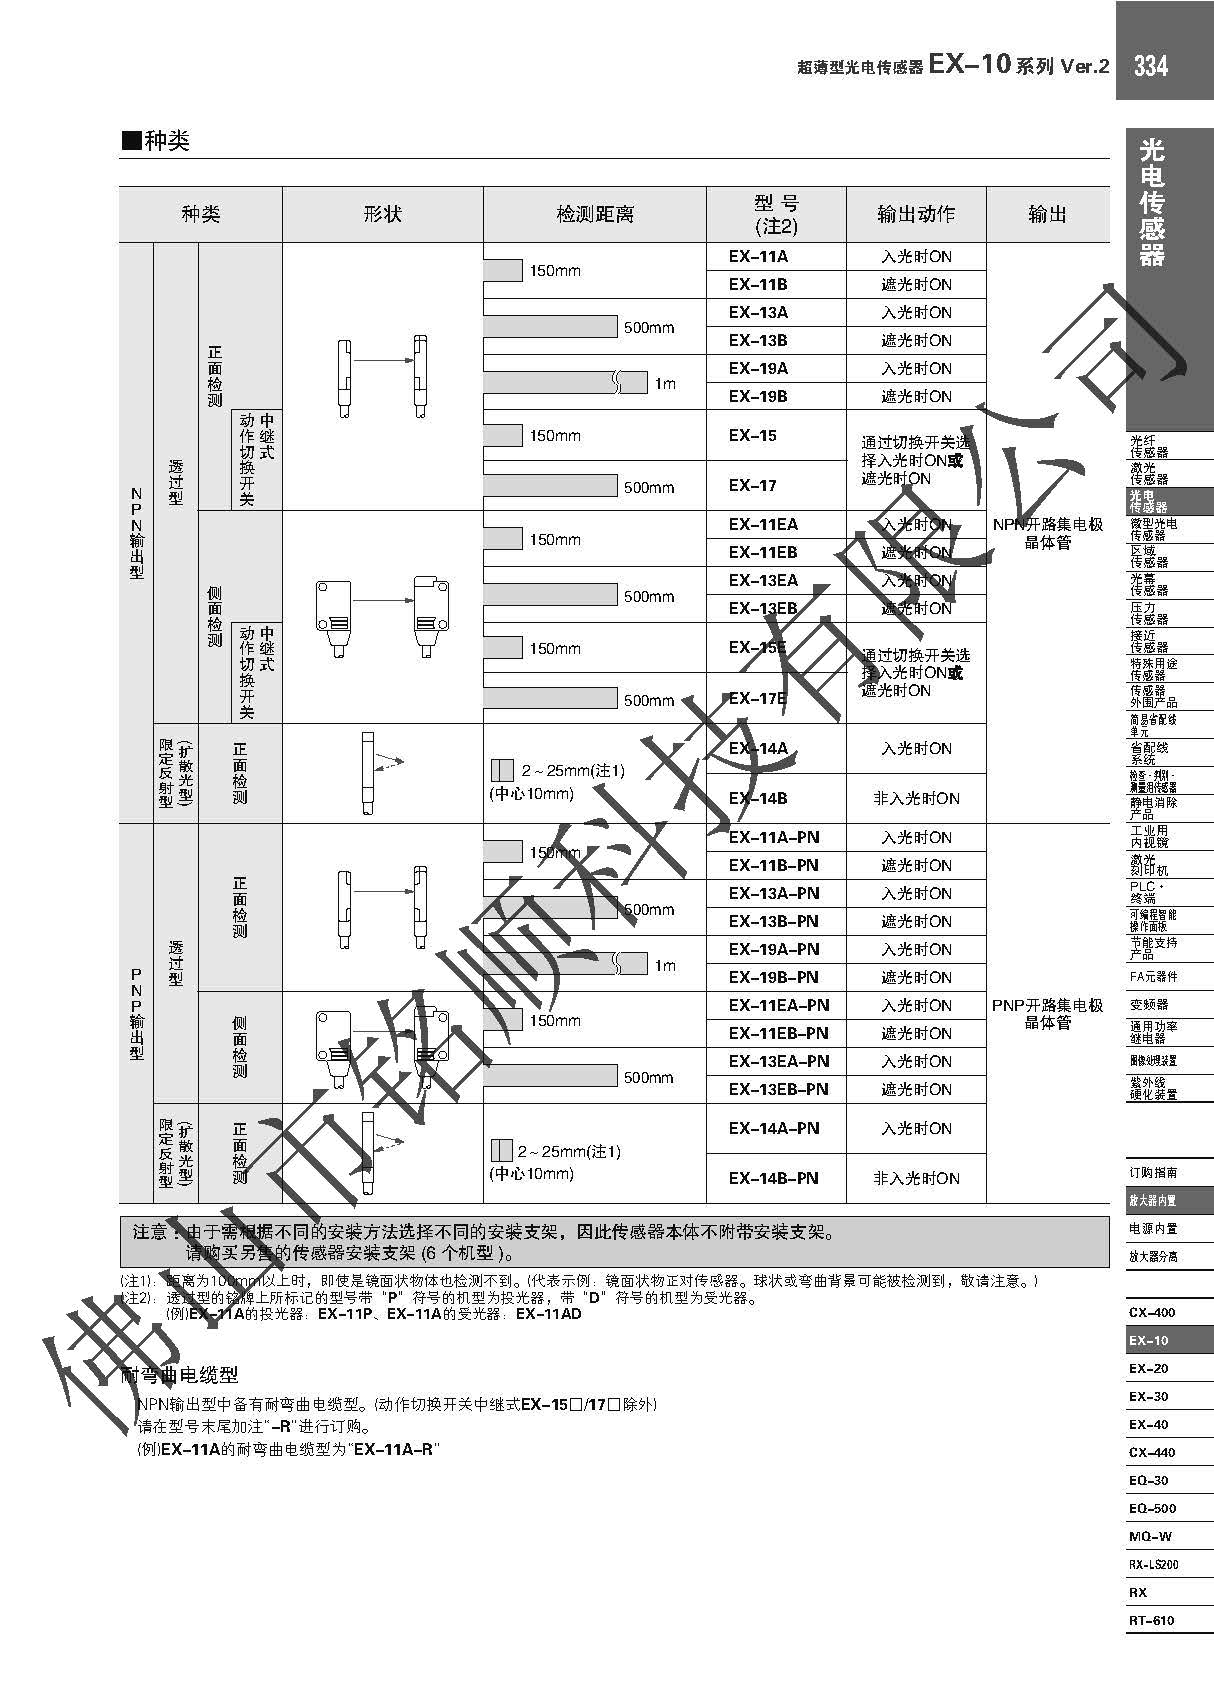 日本松下 超薄光电传感器 EX-14A EX-14A,超薄光电传感器,狭窄空间使用,性能稳定,日本松下